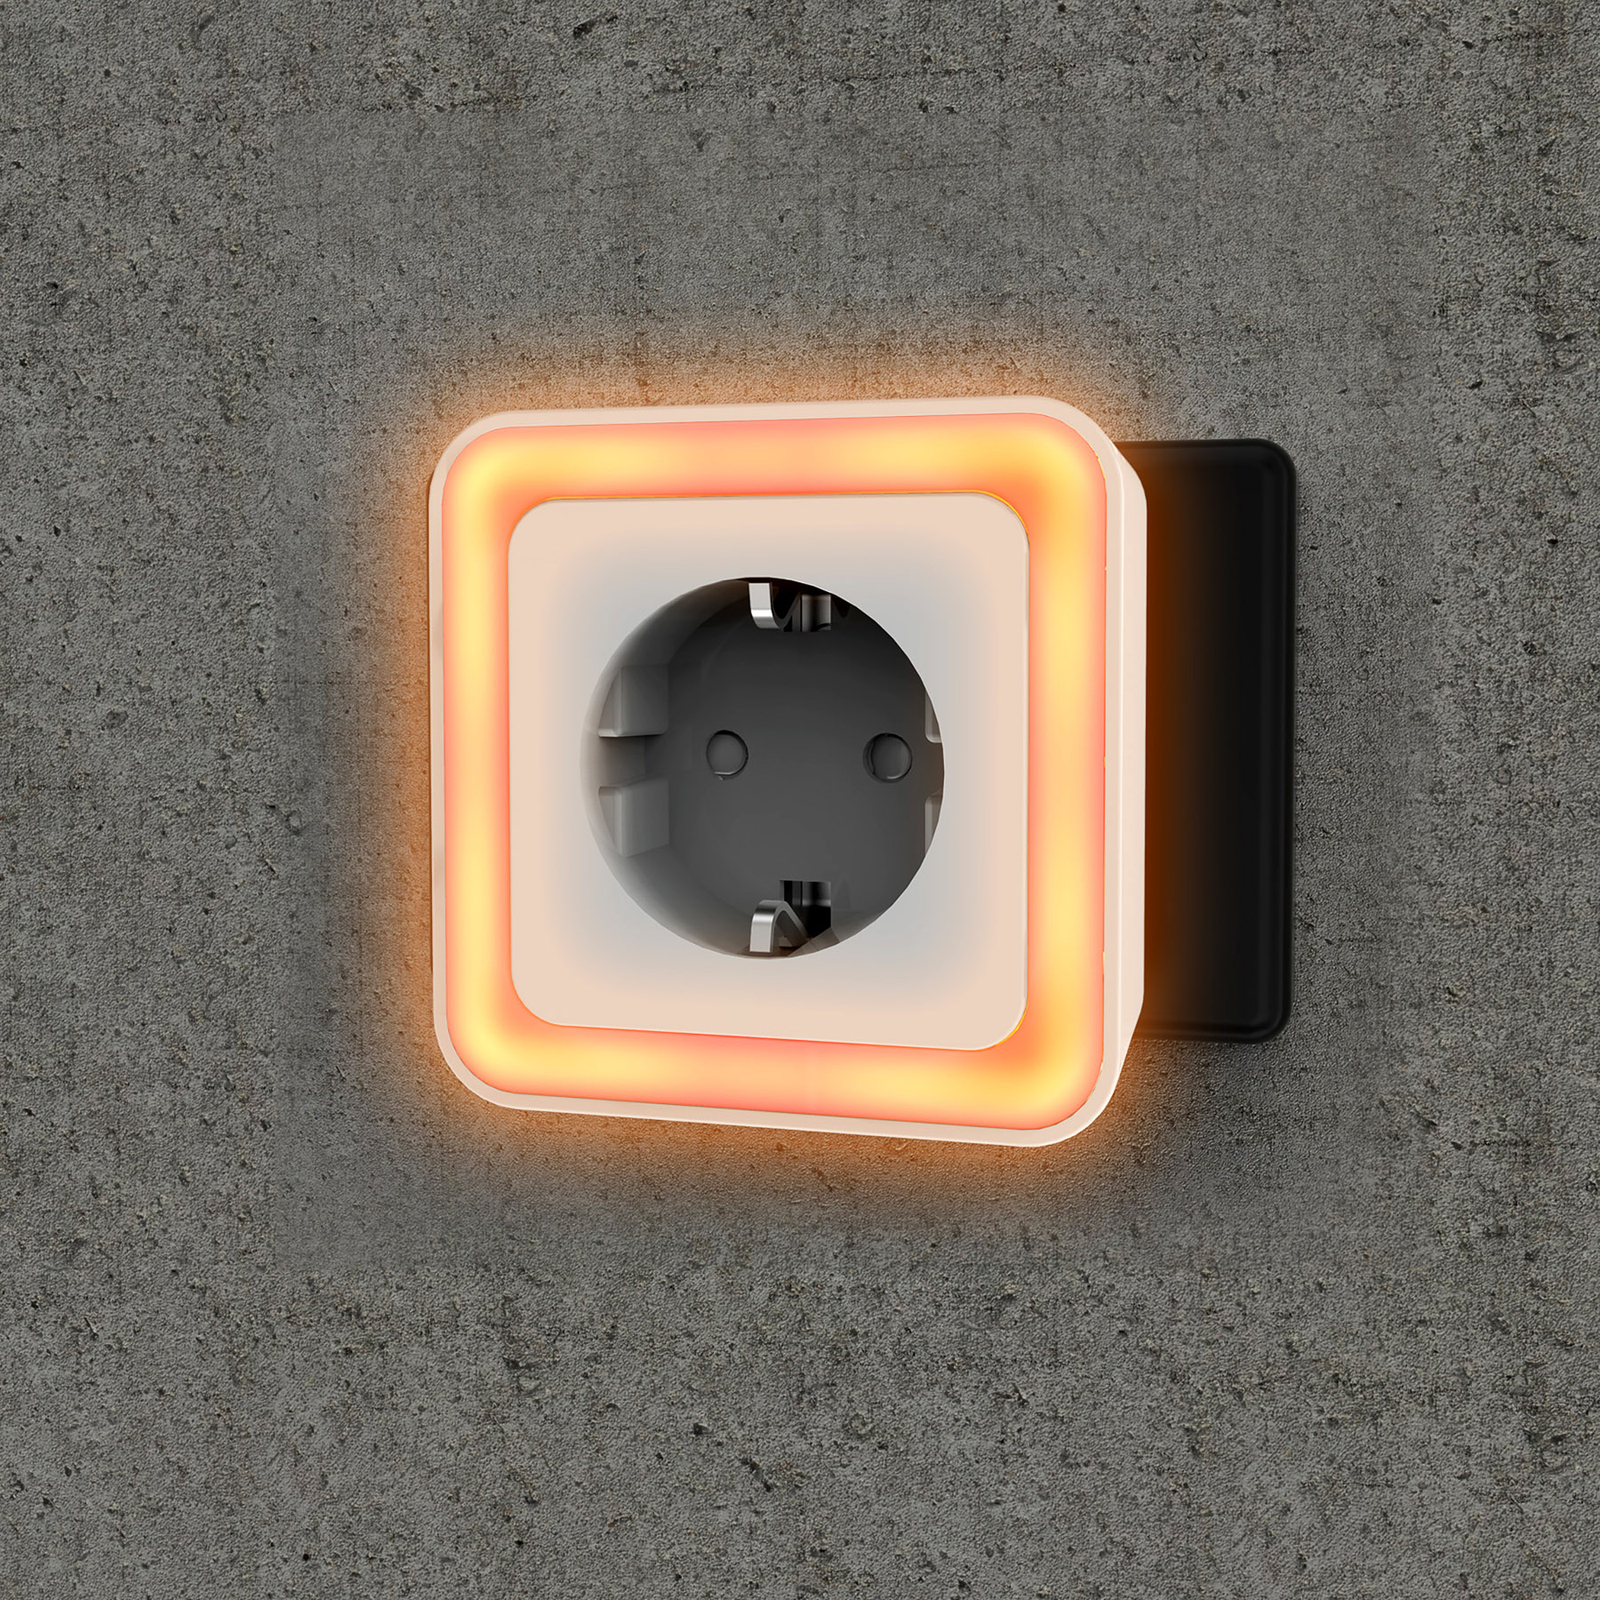 Müller Licht Misam LED plug-in light with a sensor